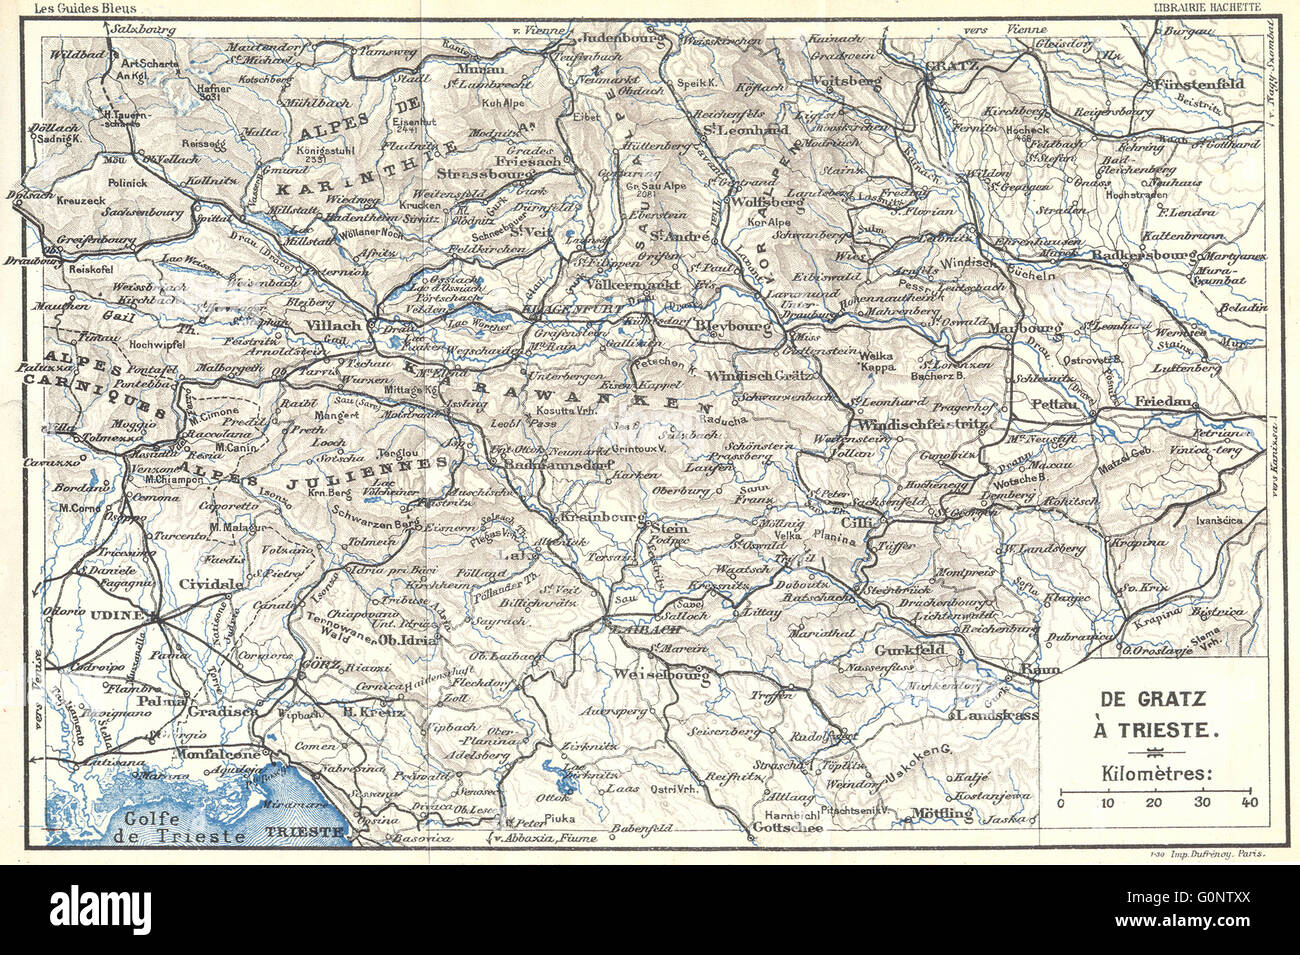 Italien: De Gratz ein Triest, Antike Landkarte 1914 Stockfoto